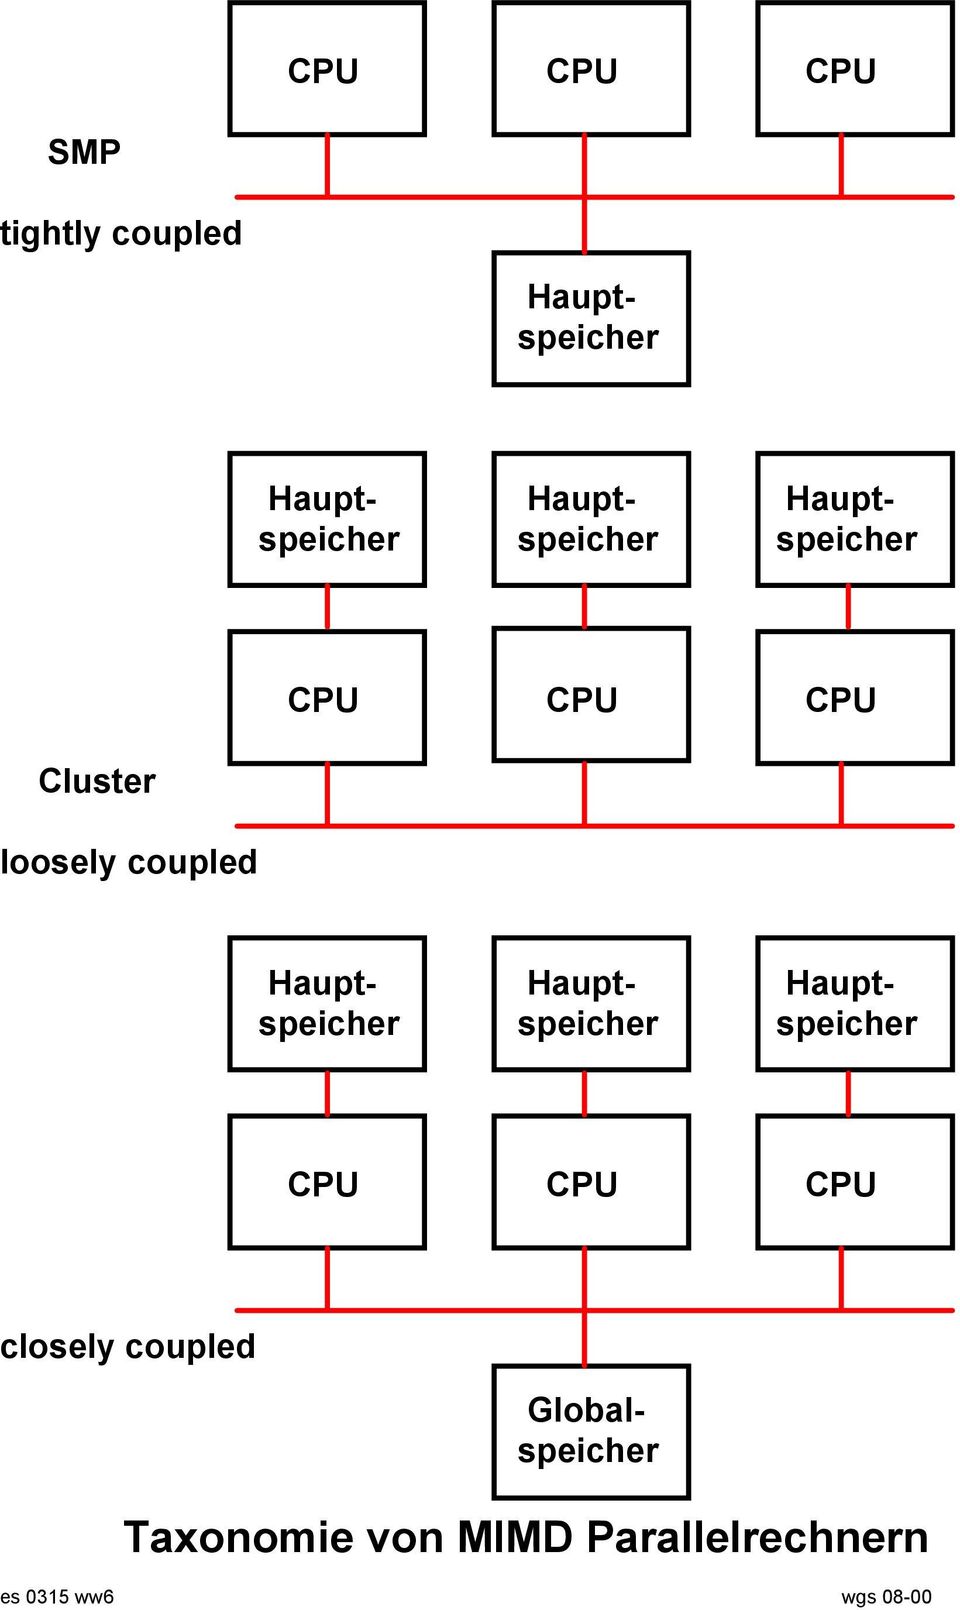 Haupt- Haupt- Hauptspeicher speicher speicher CPU CPU CPU closely